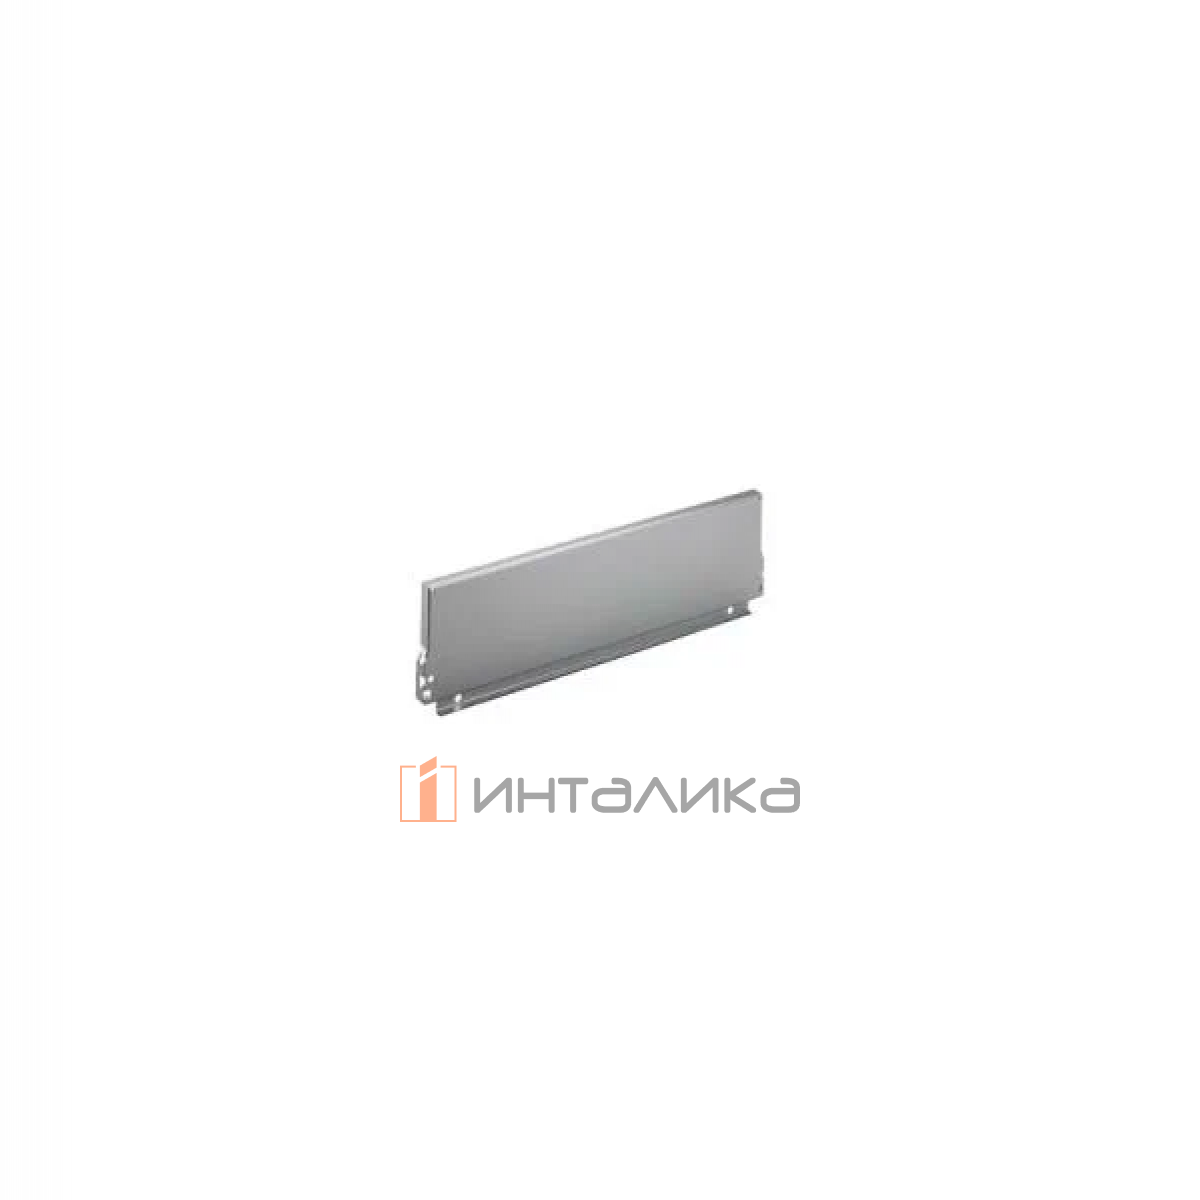 Задняя стенка HETTICH InnoTech/InnoTech Atira, высота 144мм, H400 мм, сталь, цвет серебристый, (V20)